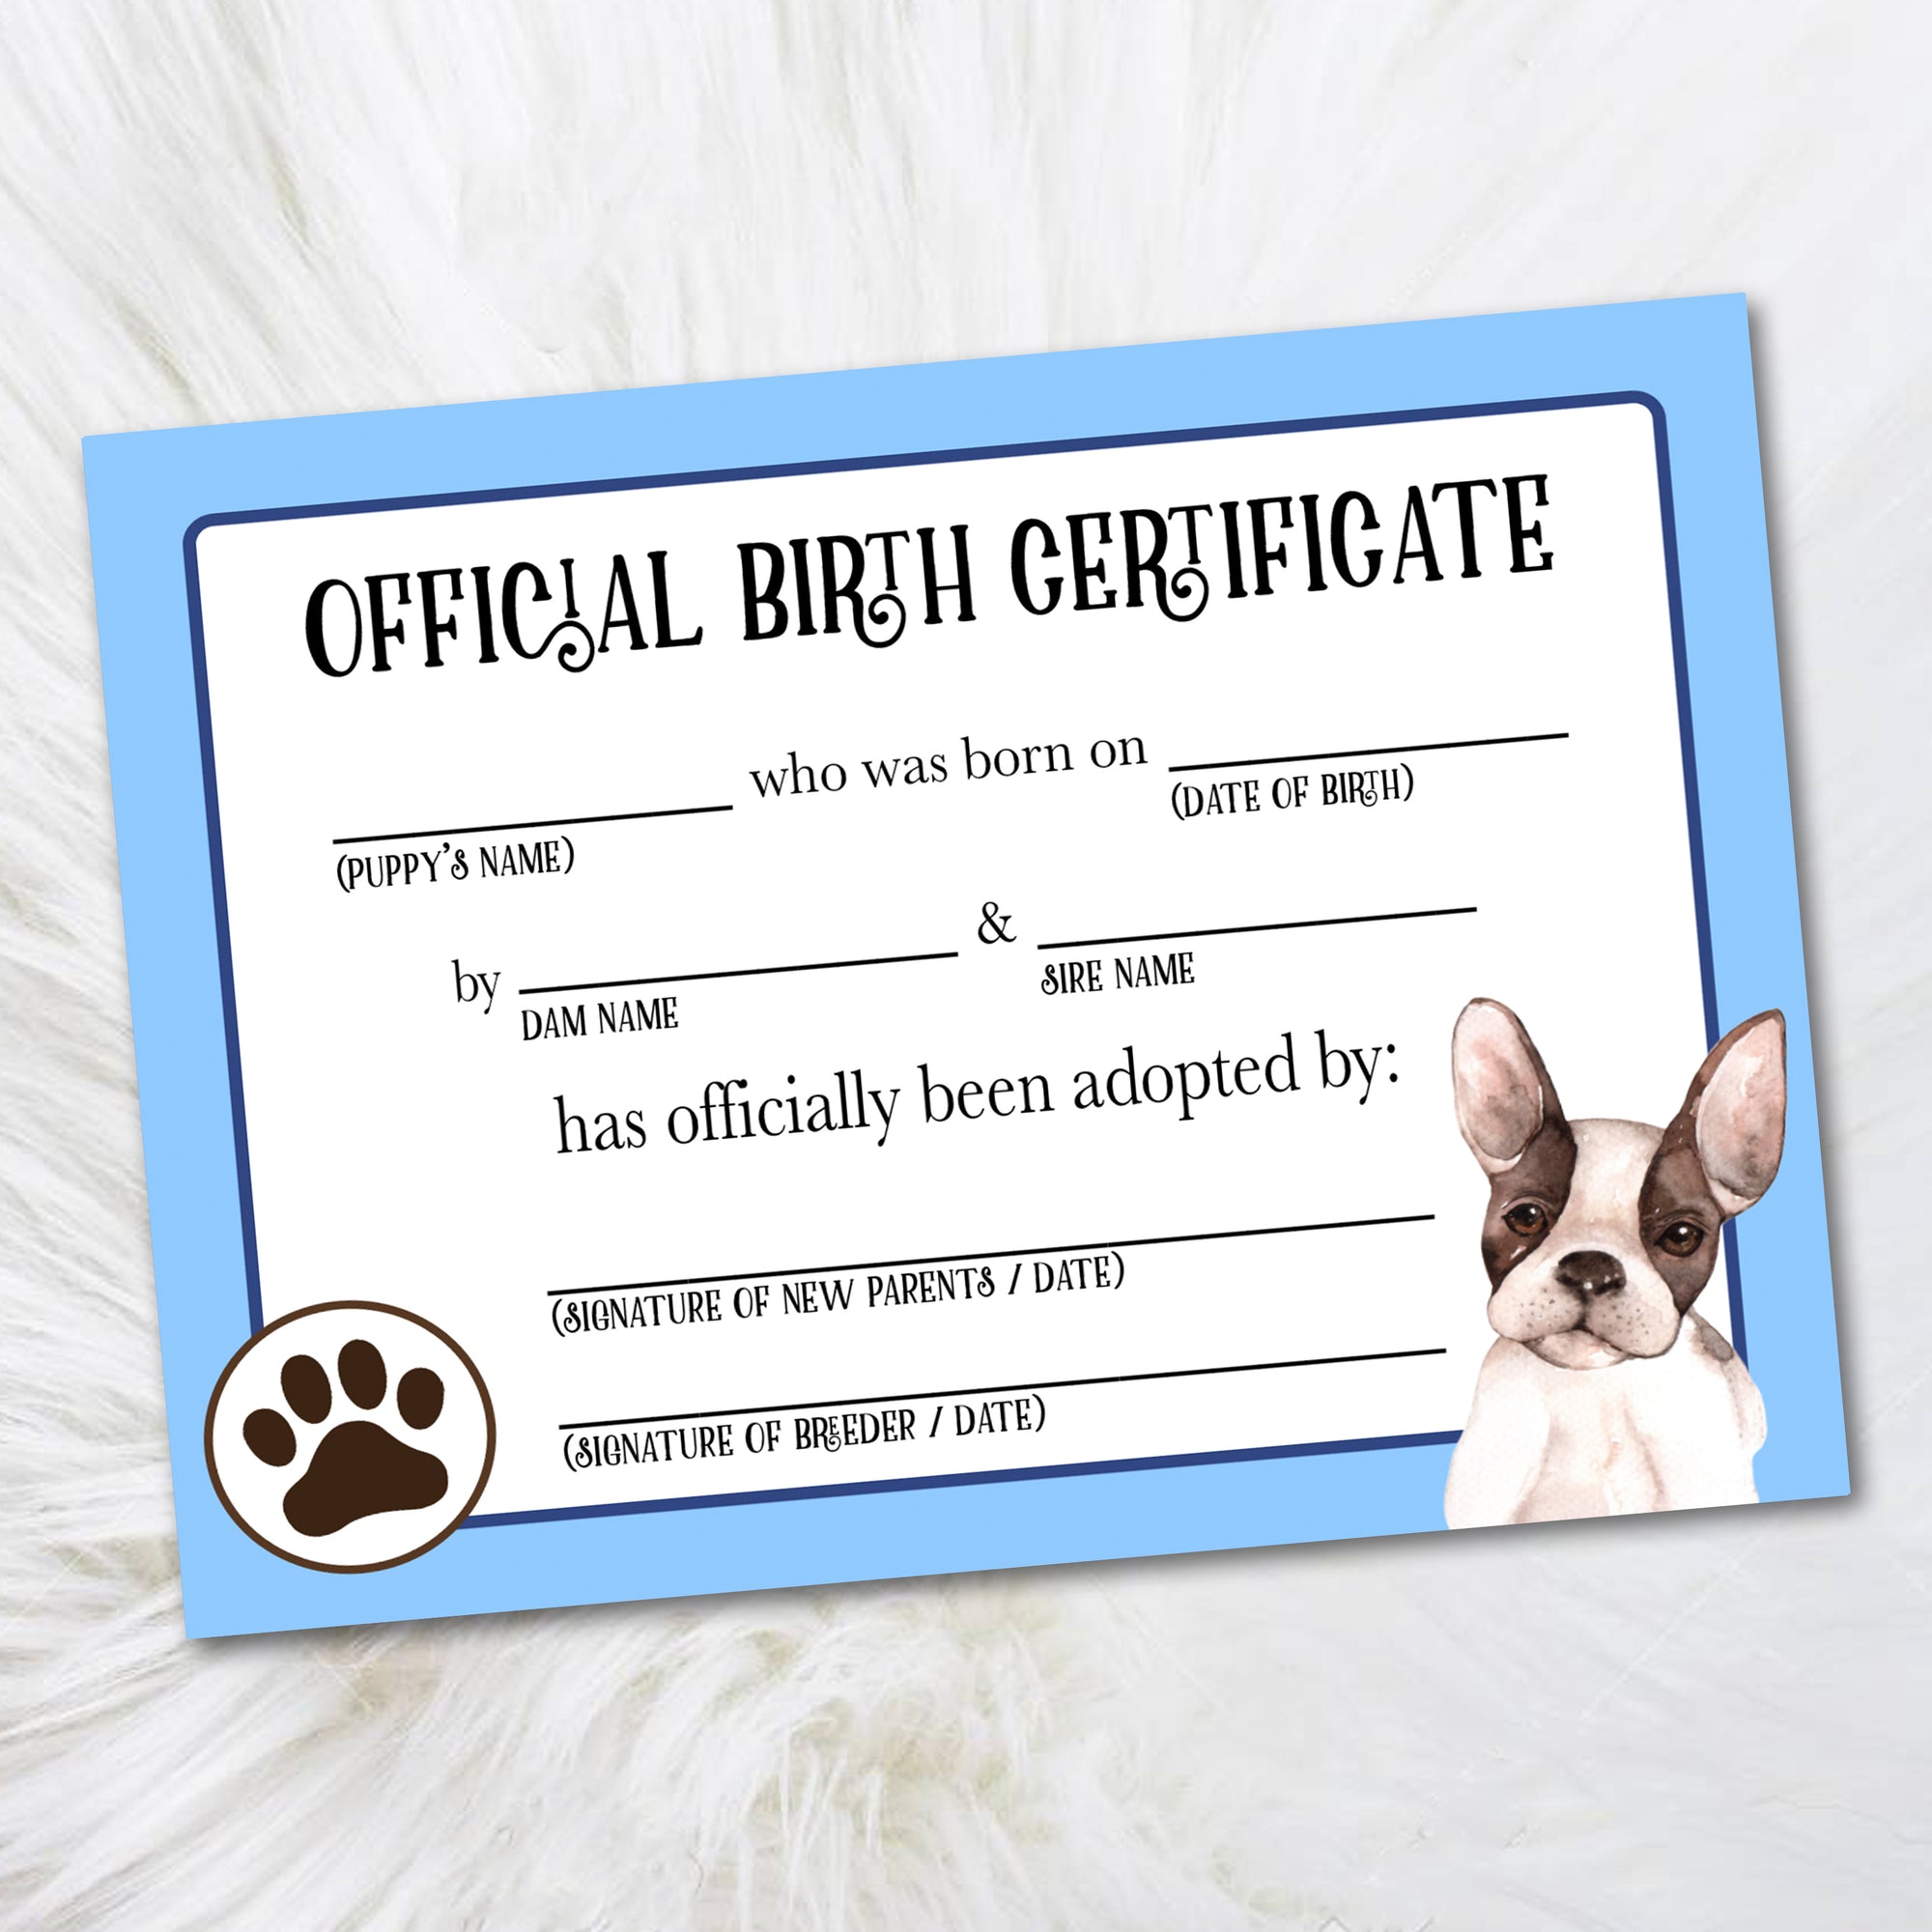 Boston terrier adoption certificate, puppy birth certificate from dog breeder